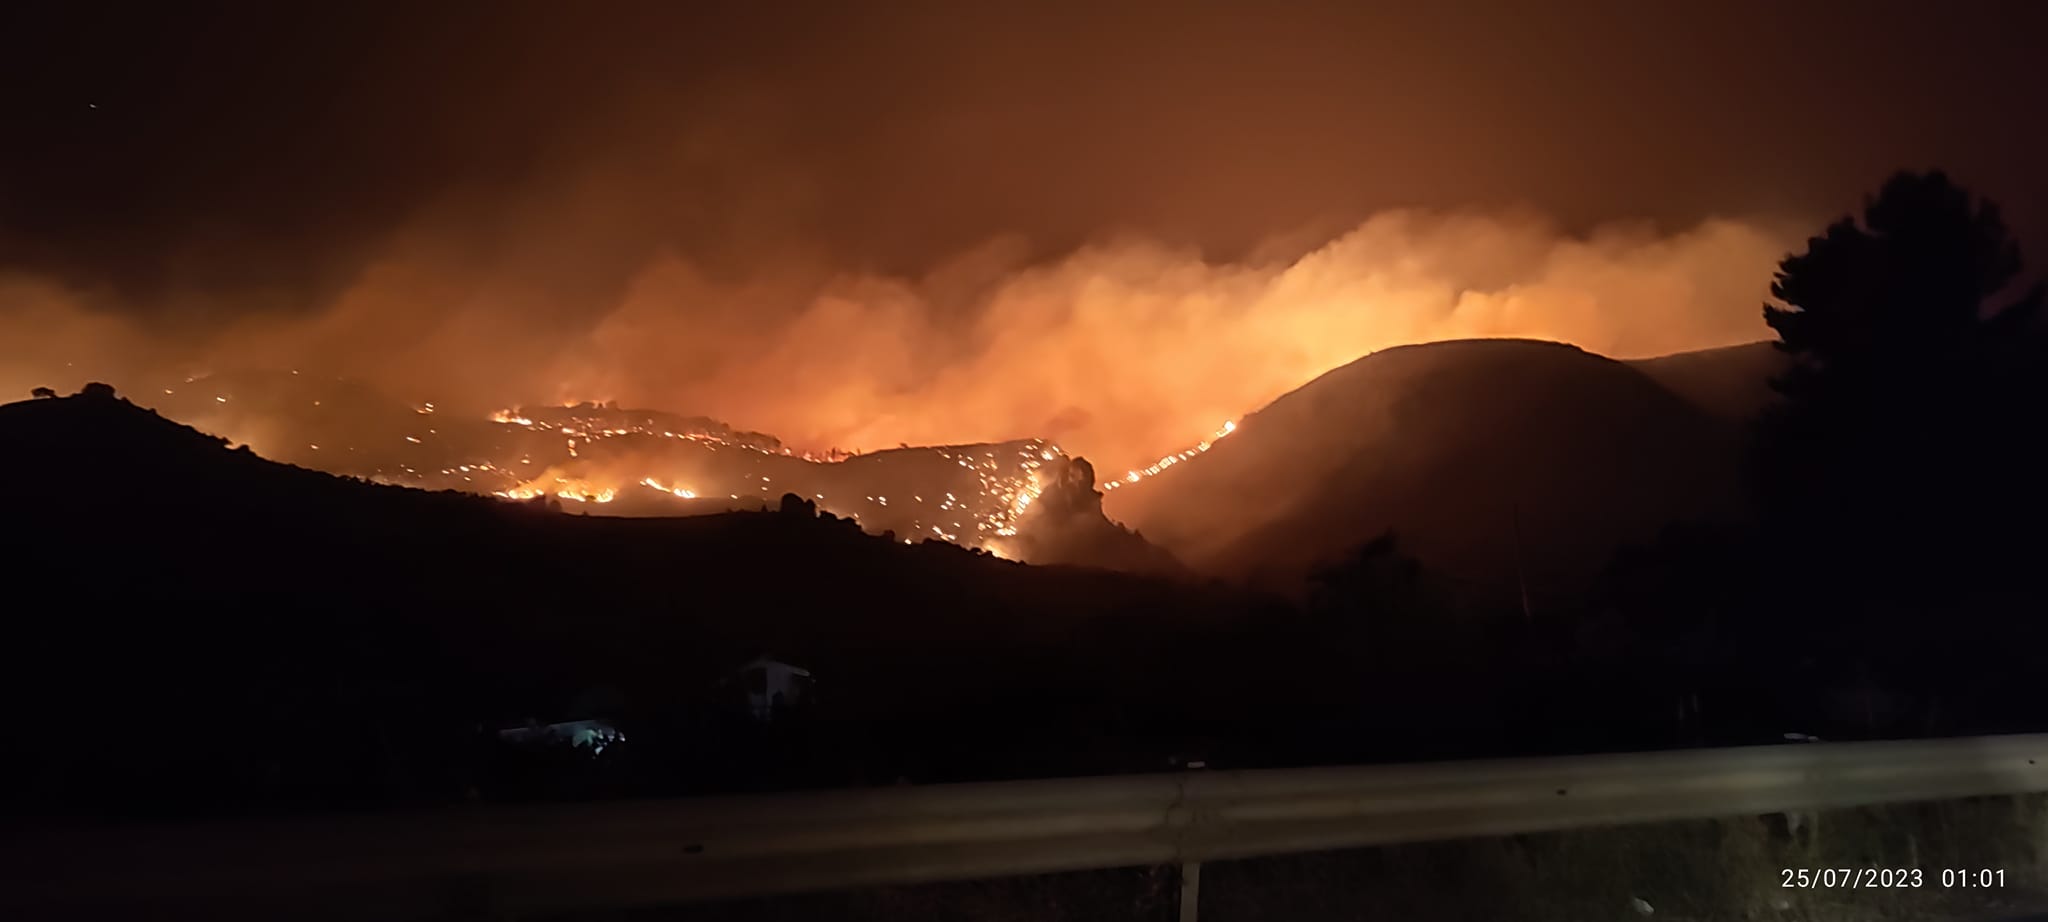 Gli incendi estivi in Sicilia e la staffetta delle responsabilità